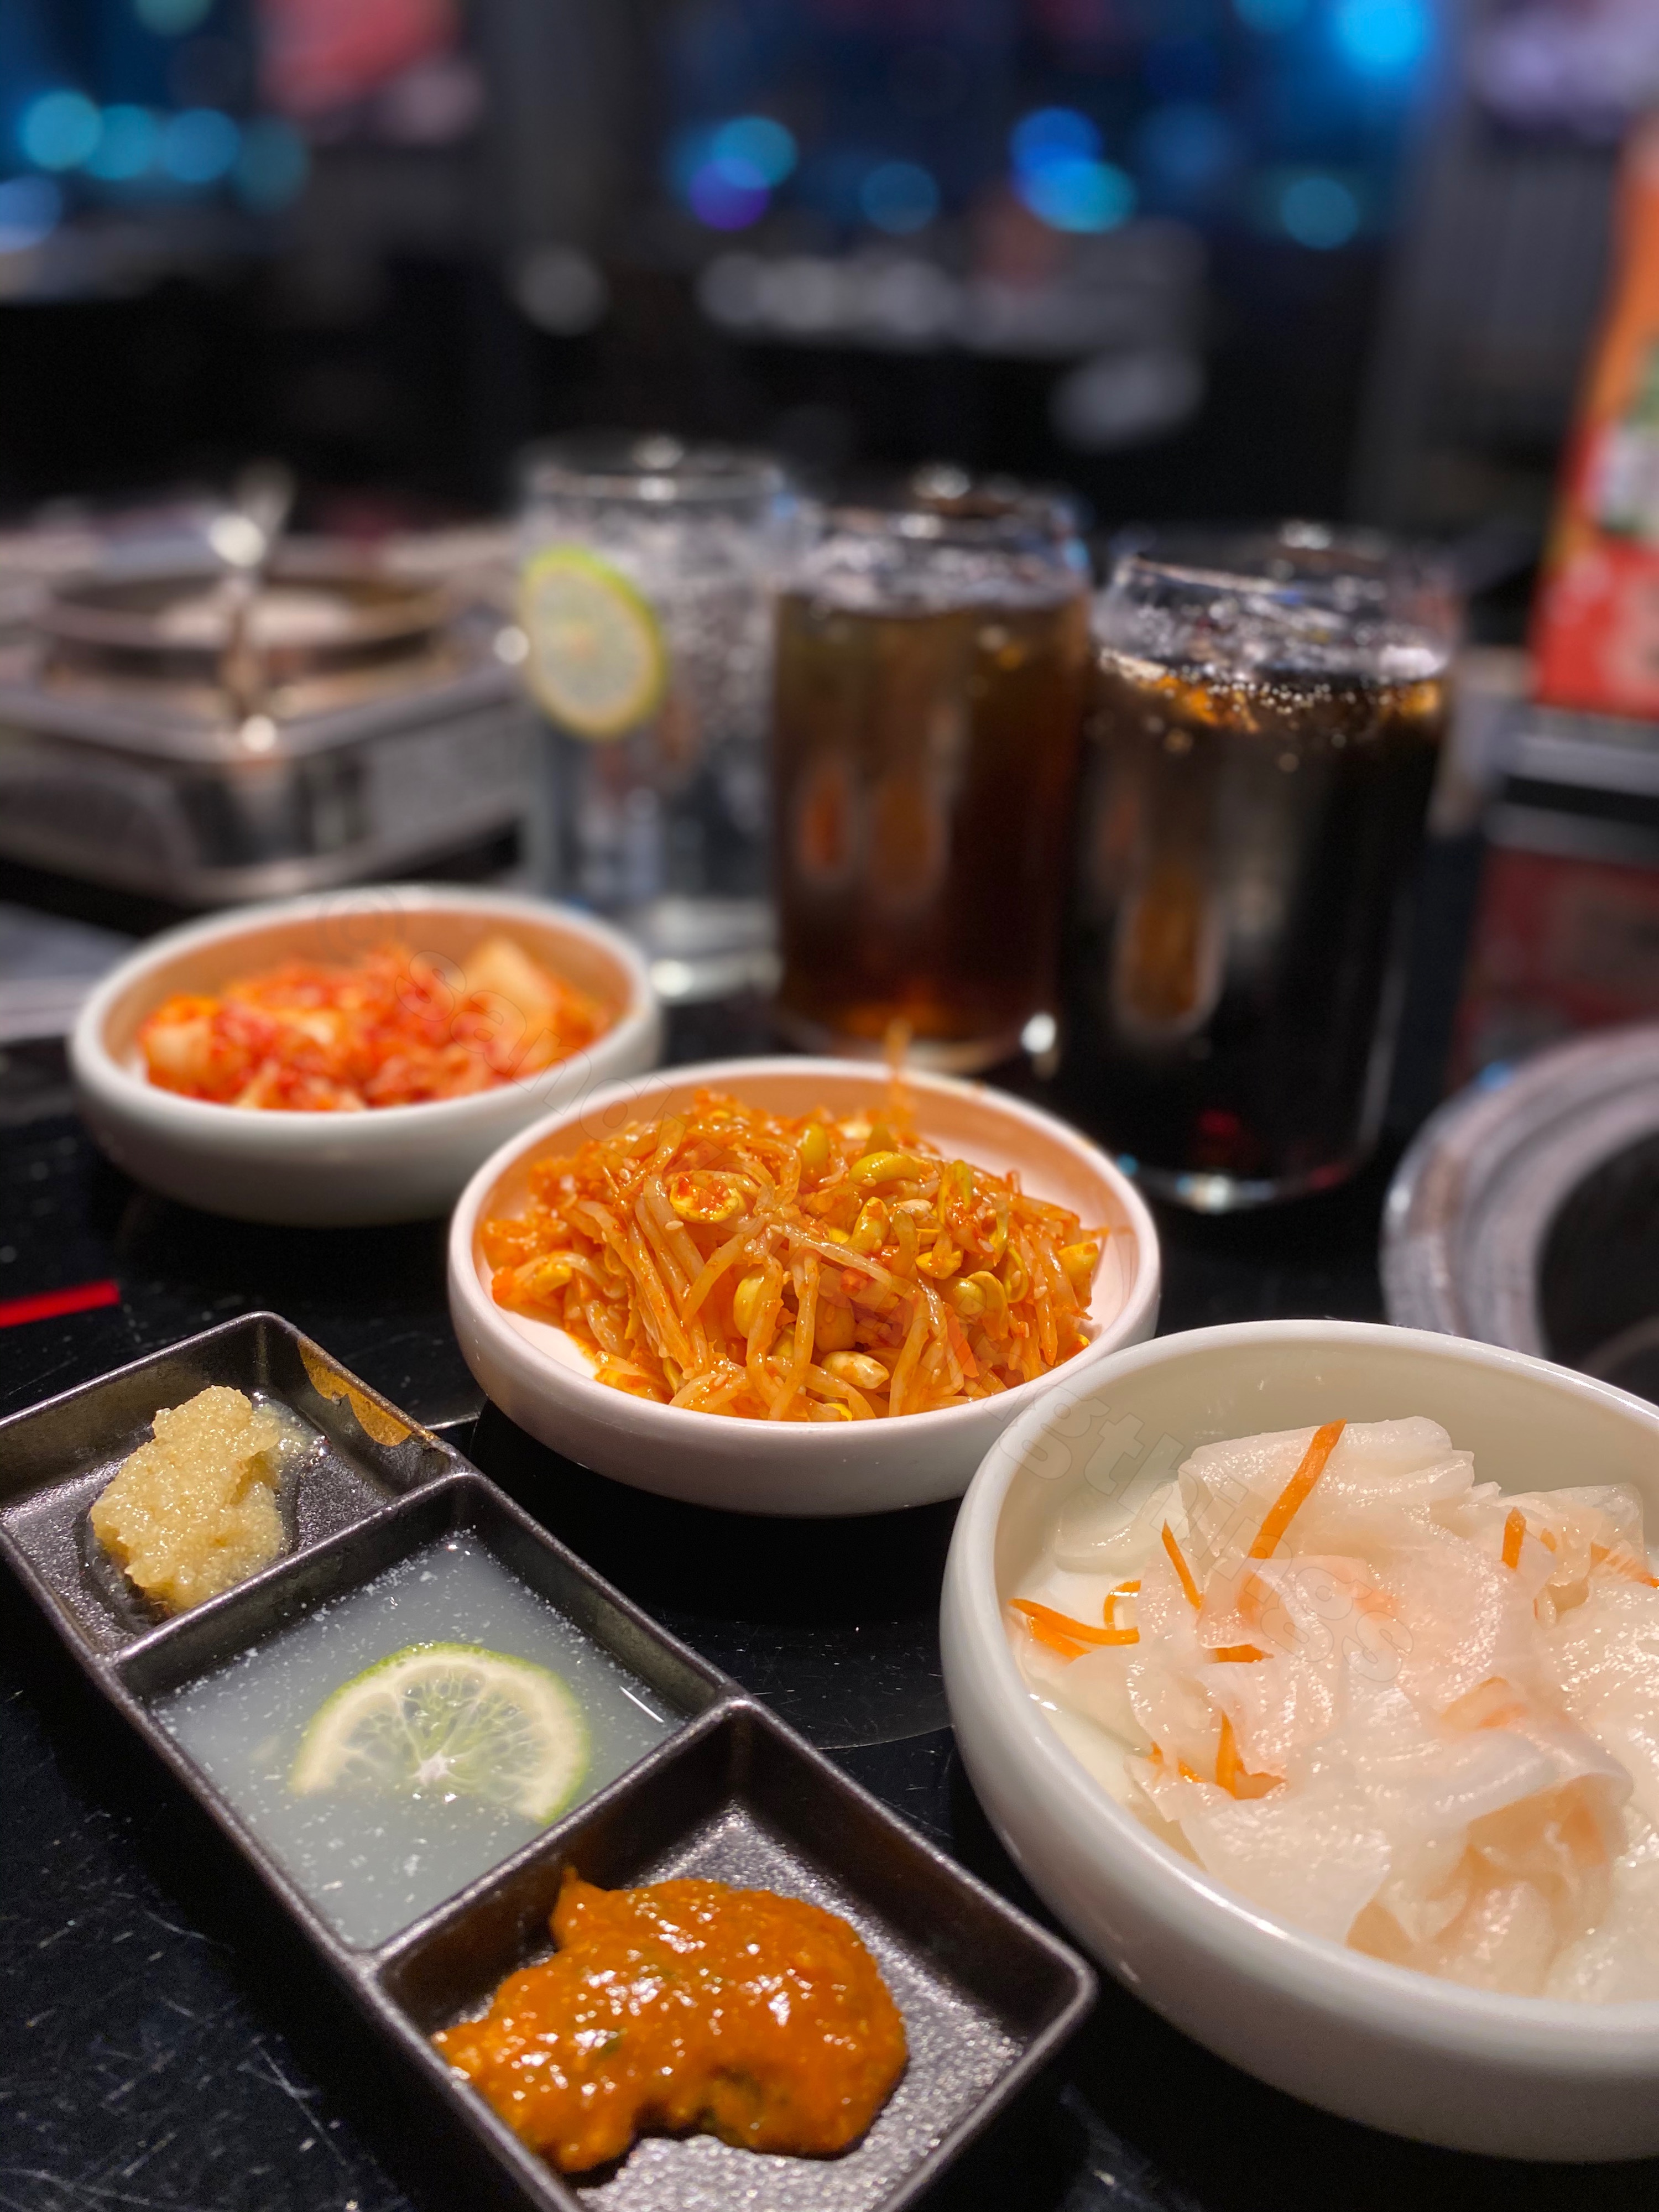 韓式泡菜、小菜、豆芽、醃蘿蔔
韓式辣醬、檸檬汁、蒜泥